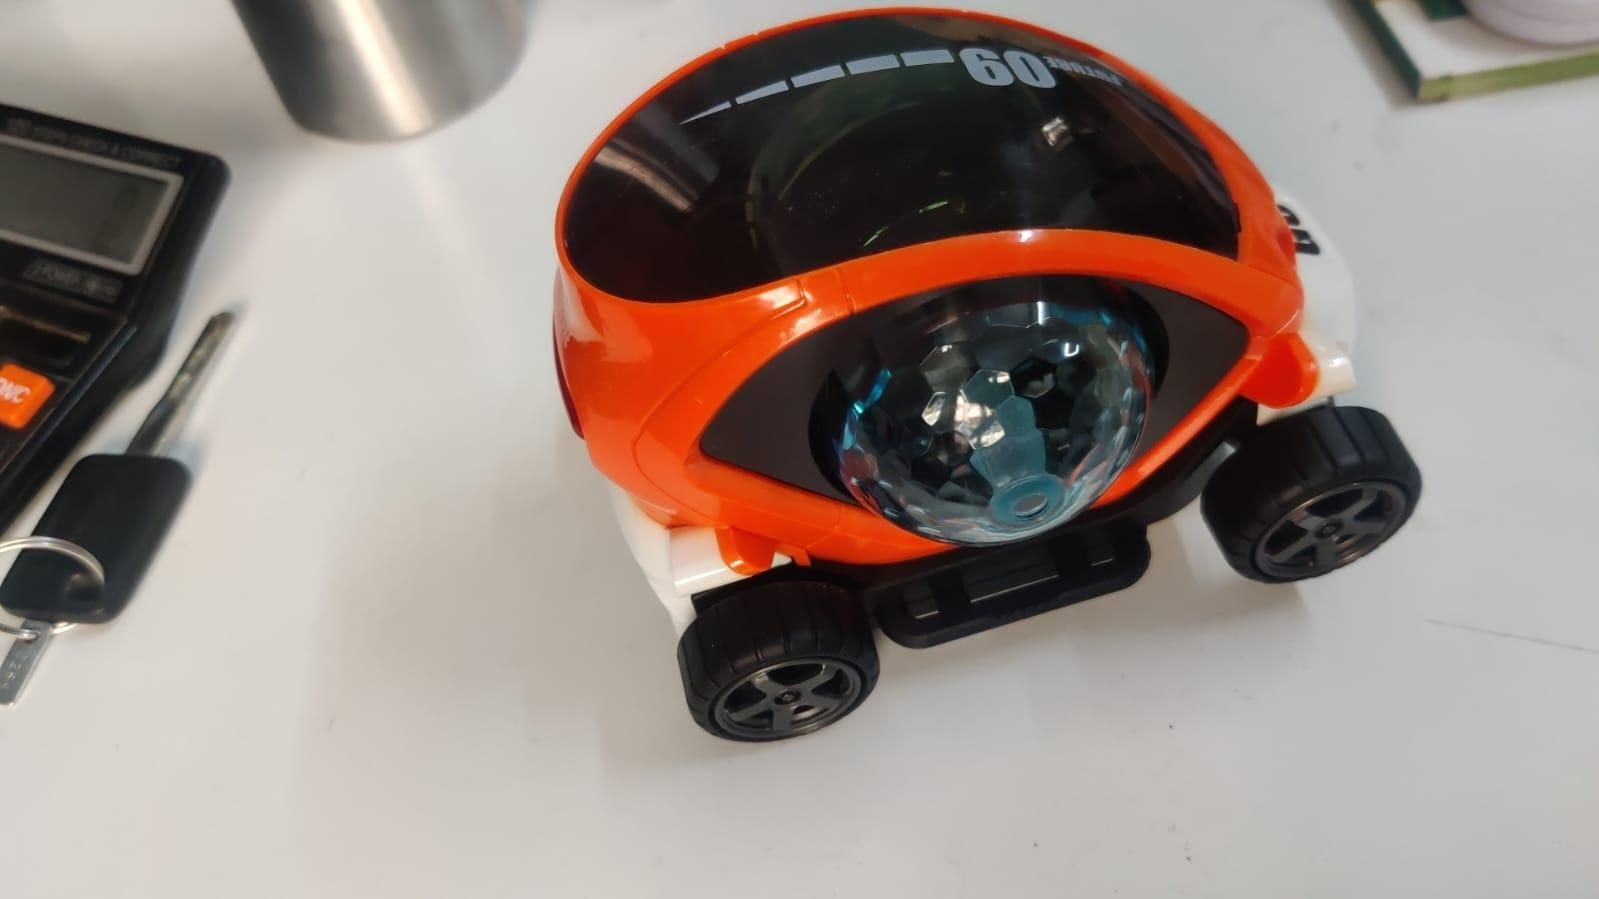 Toy Fair Lighting Car for Little Boys & Little Girls